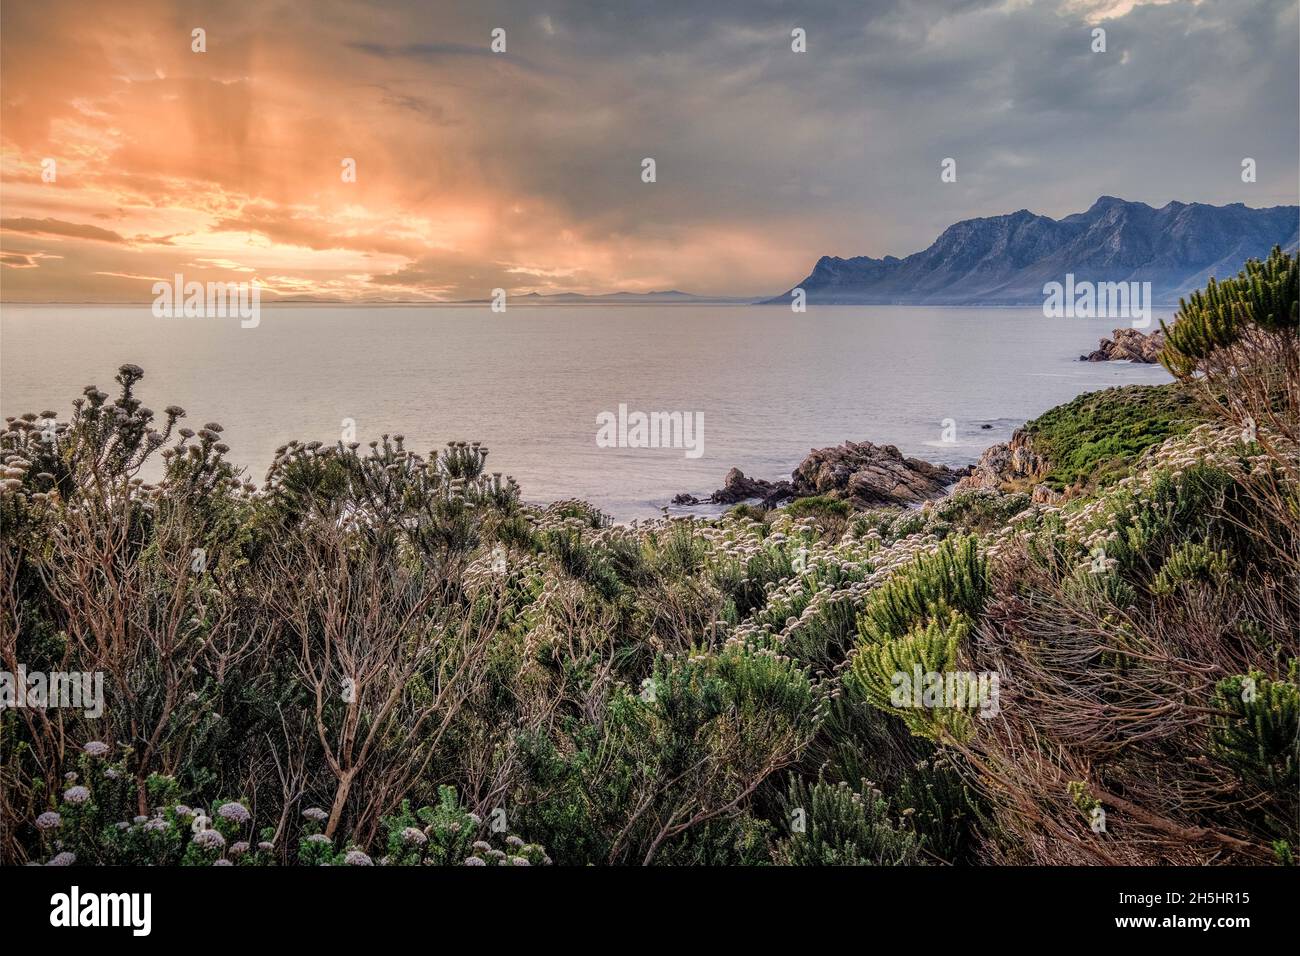 Afrique du Sud - Mer, rochers et nuages - Paysage et paysage de la côte de Rooi Els Banque D'Images